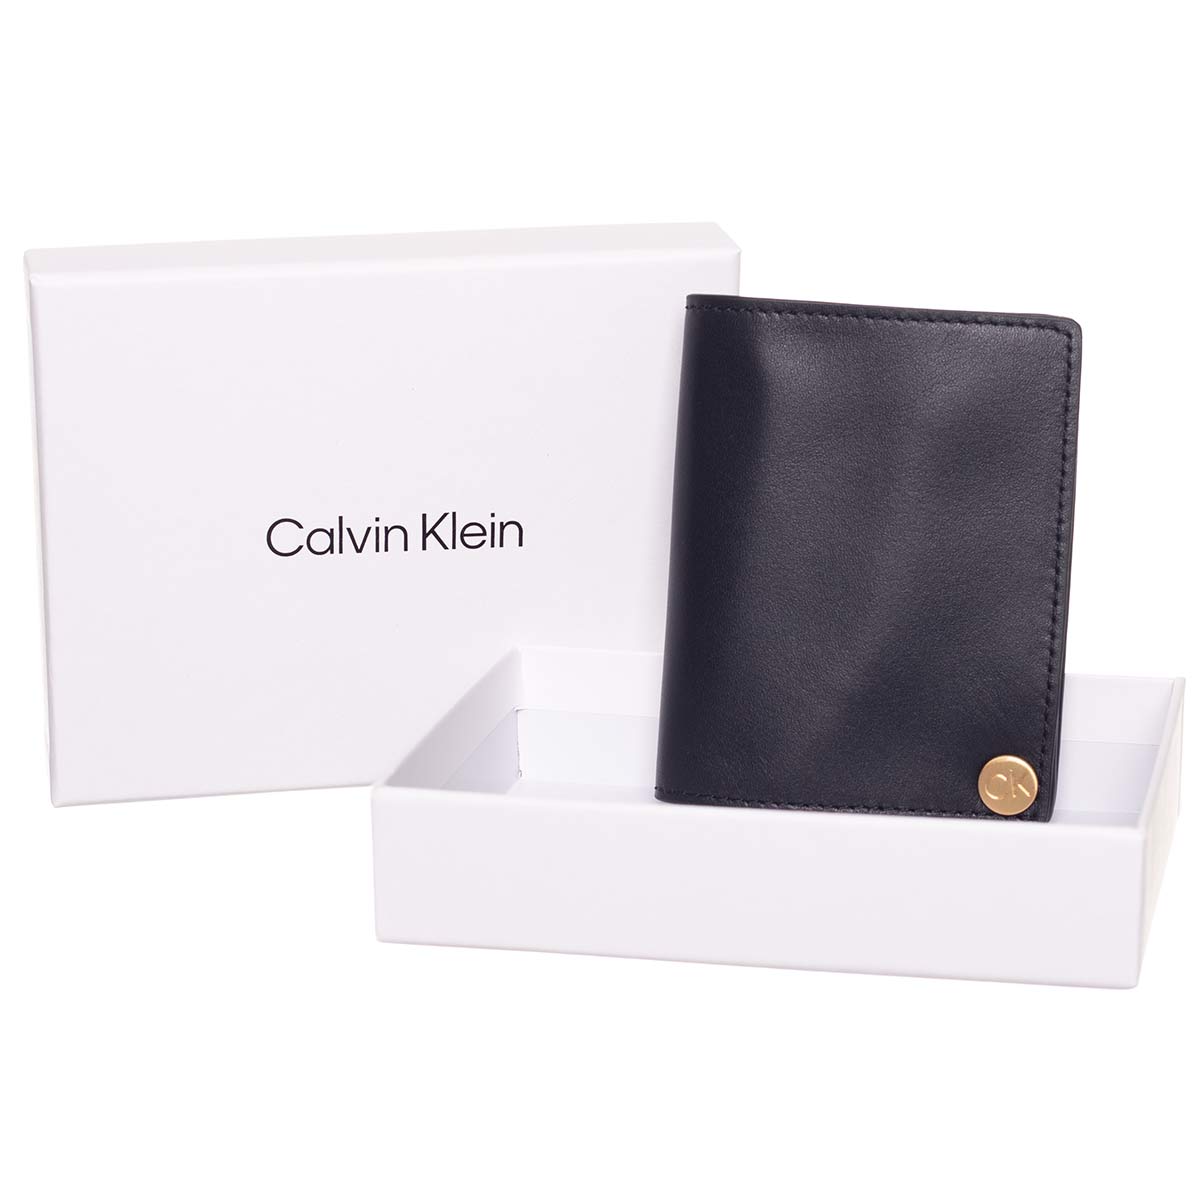 Calvin Klein Man's Wallet 8719856575502